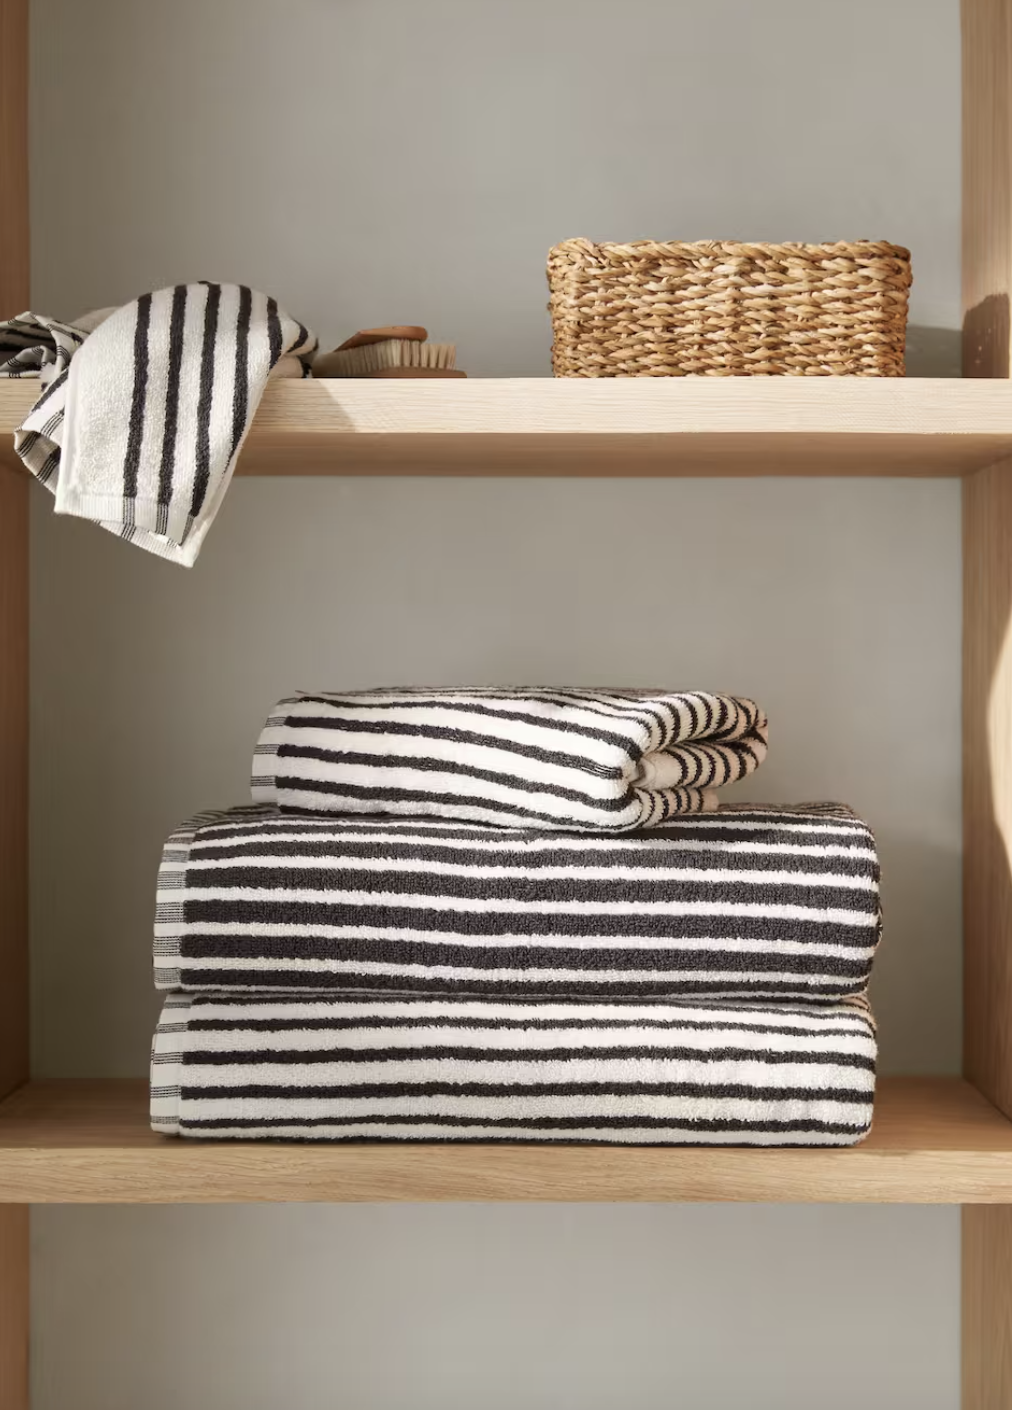 juego de toallas de baño a rayas blancas y negras en una estantería